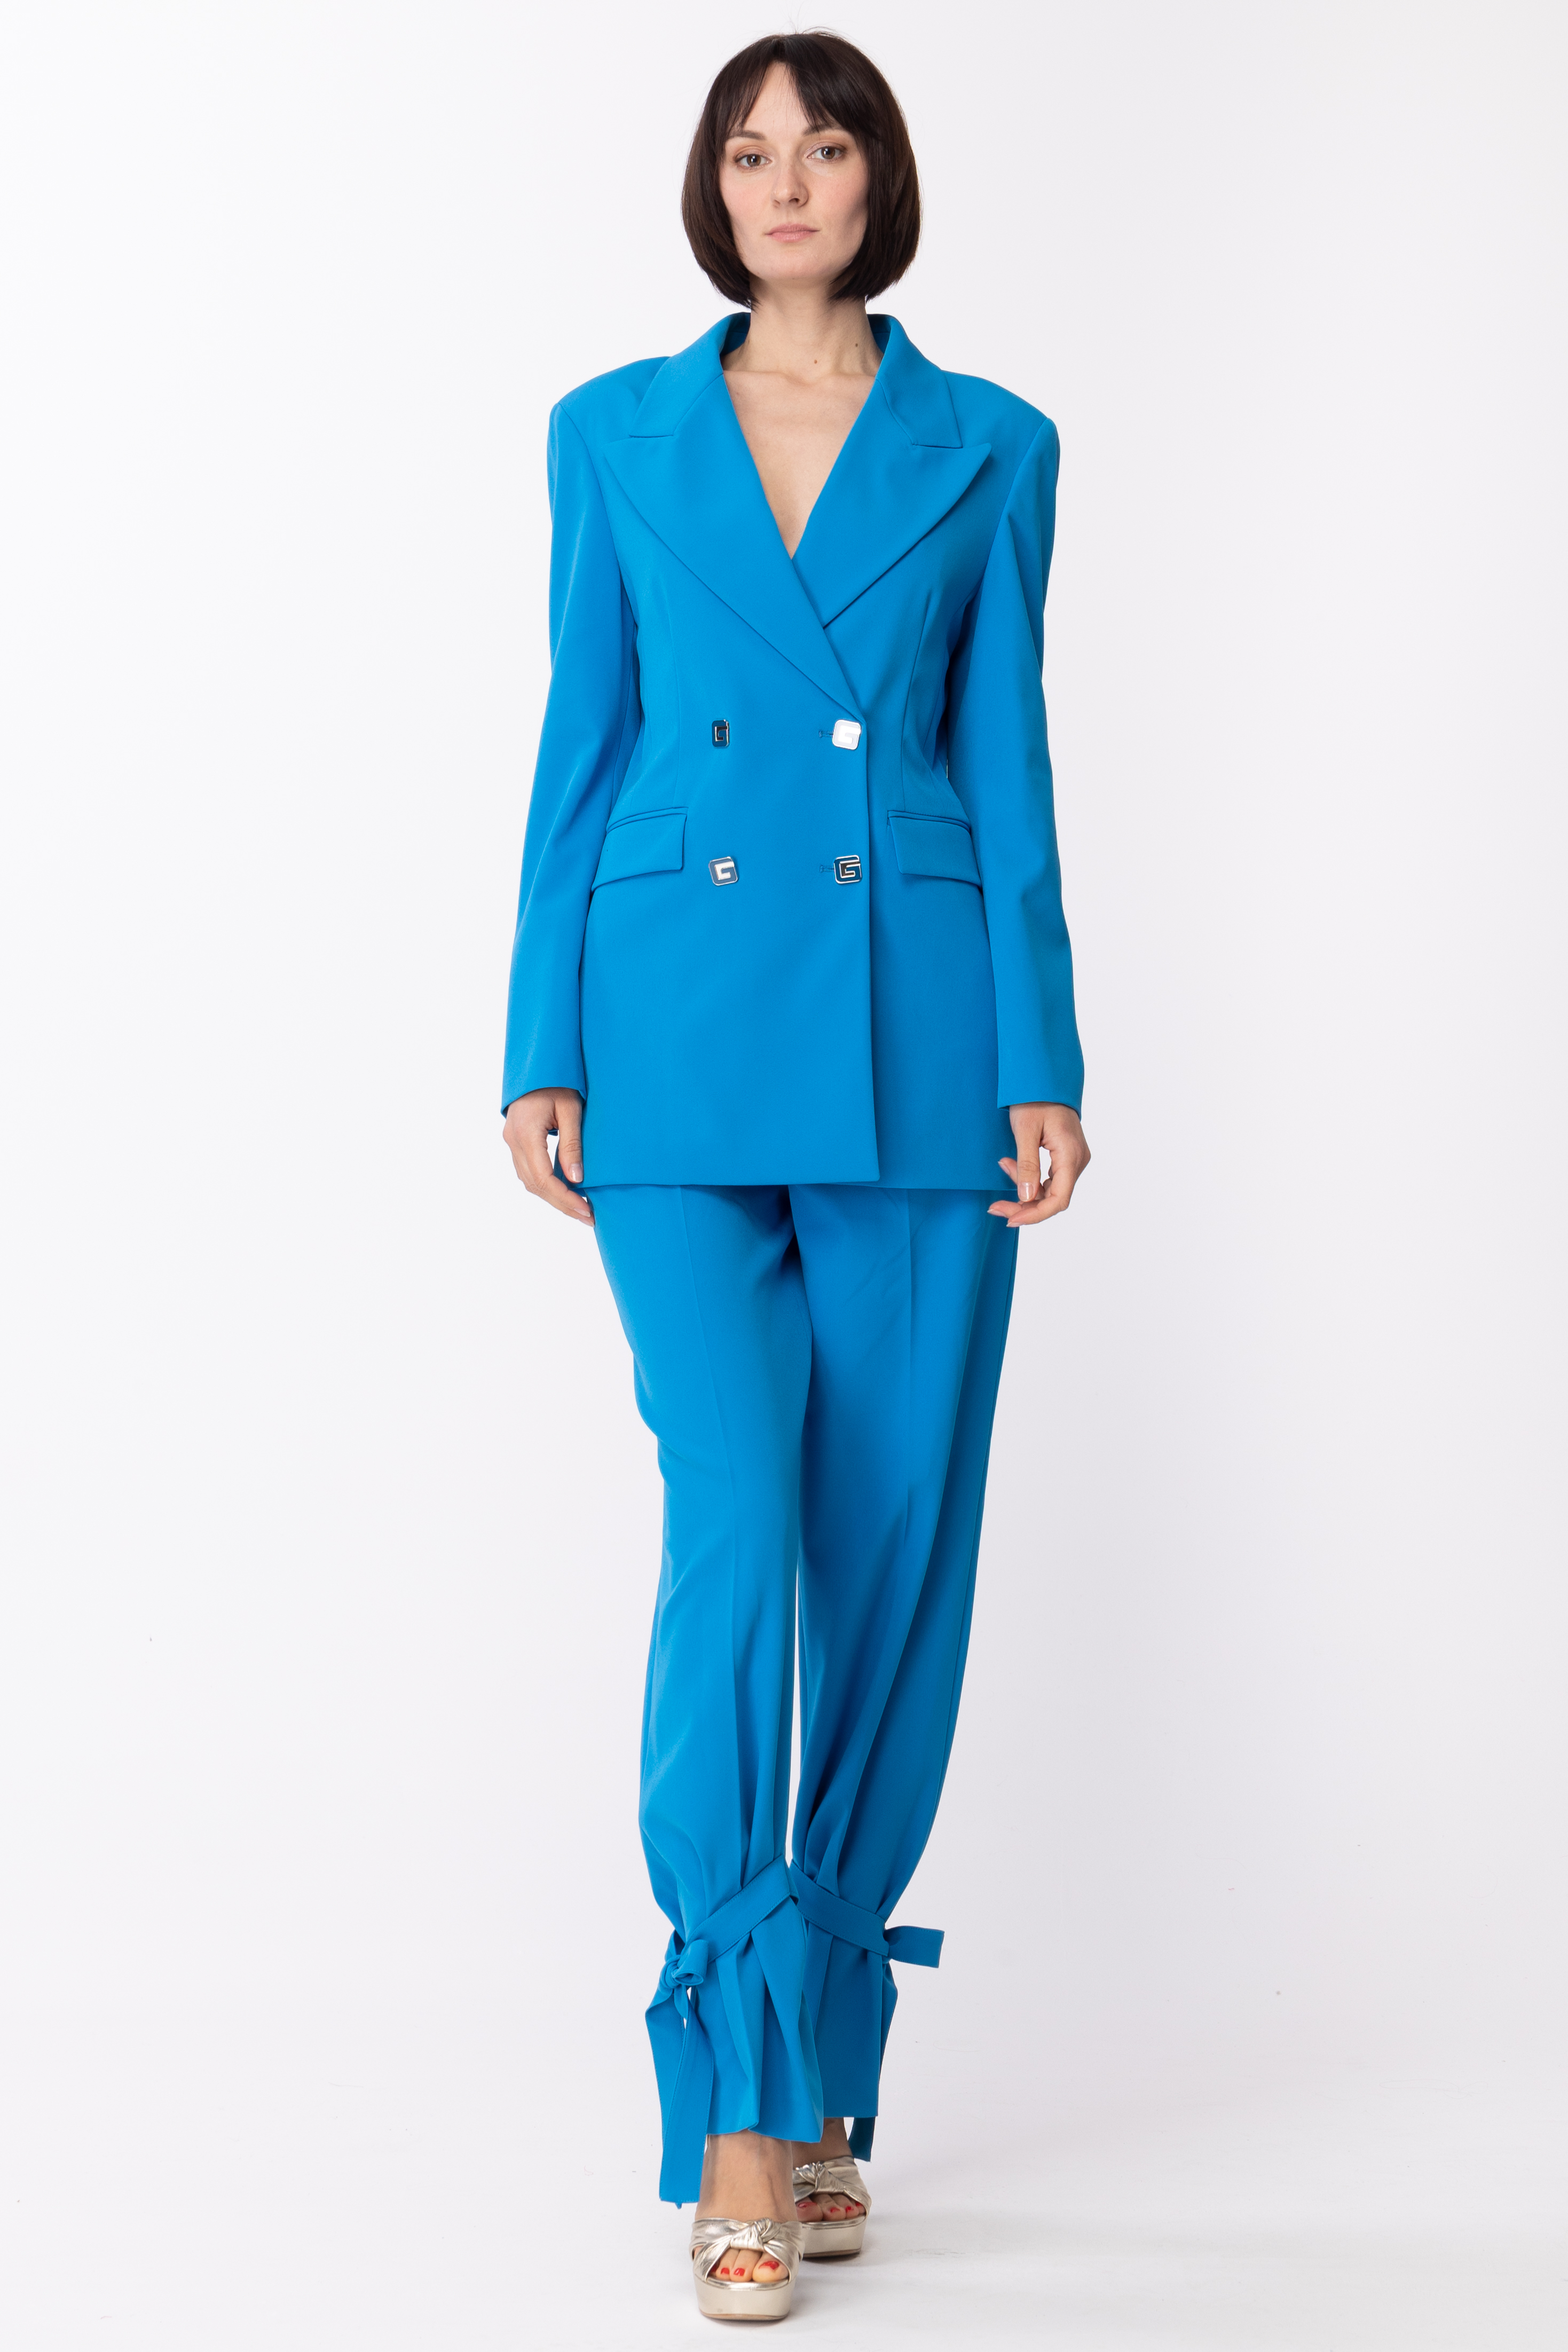 Anteprima: Gaelle Paris Pantaloni con nastri sul fondo Blu Cobalto